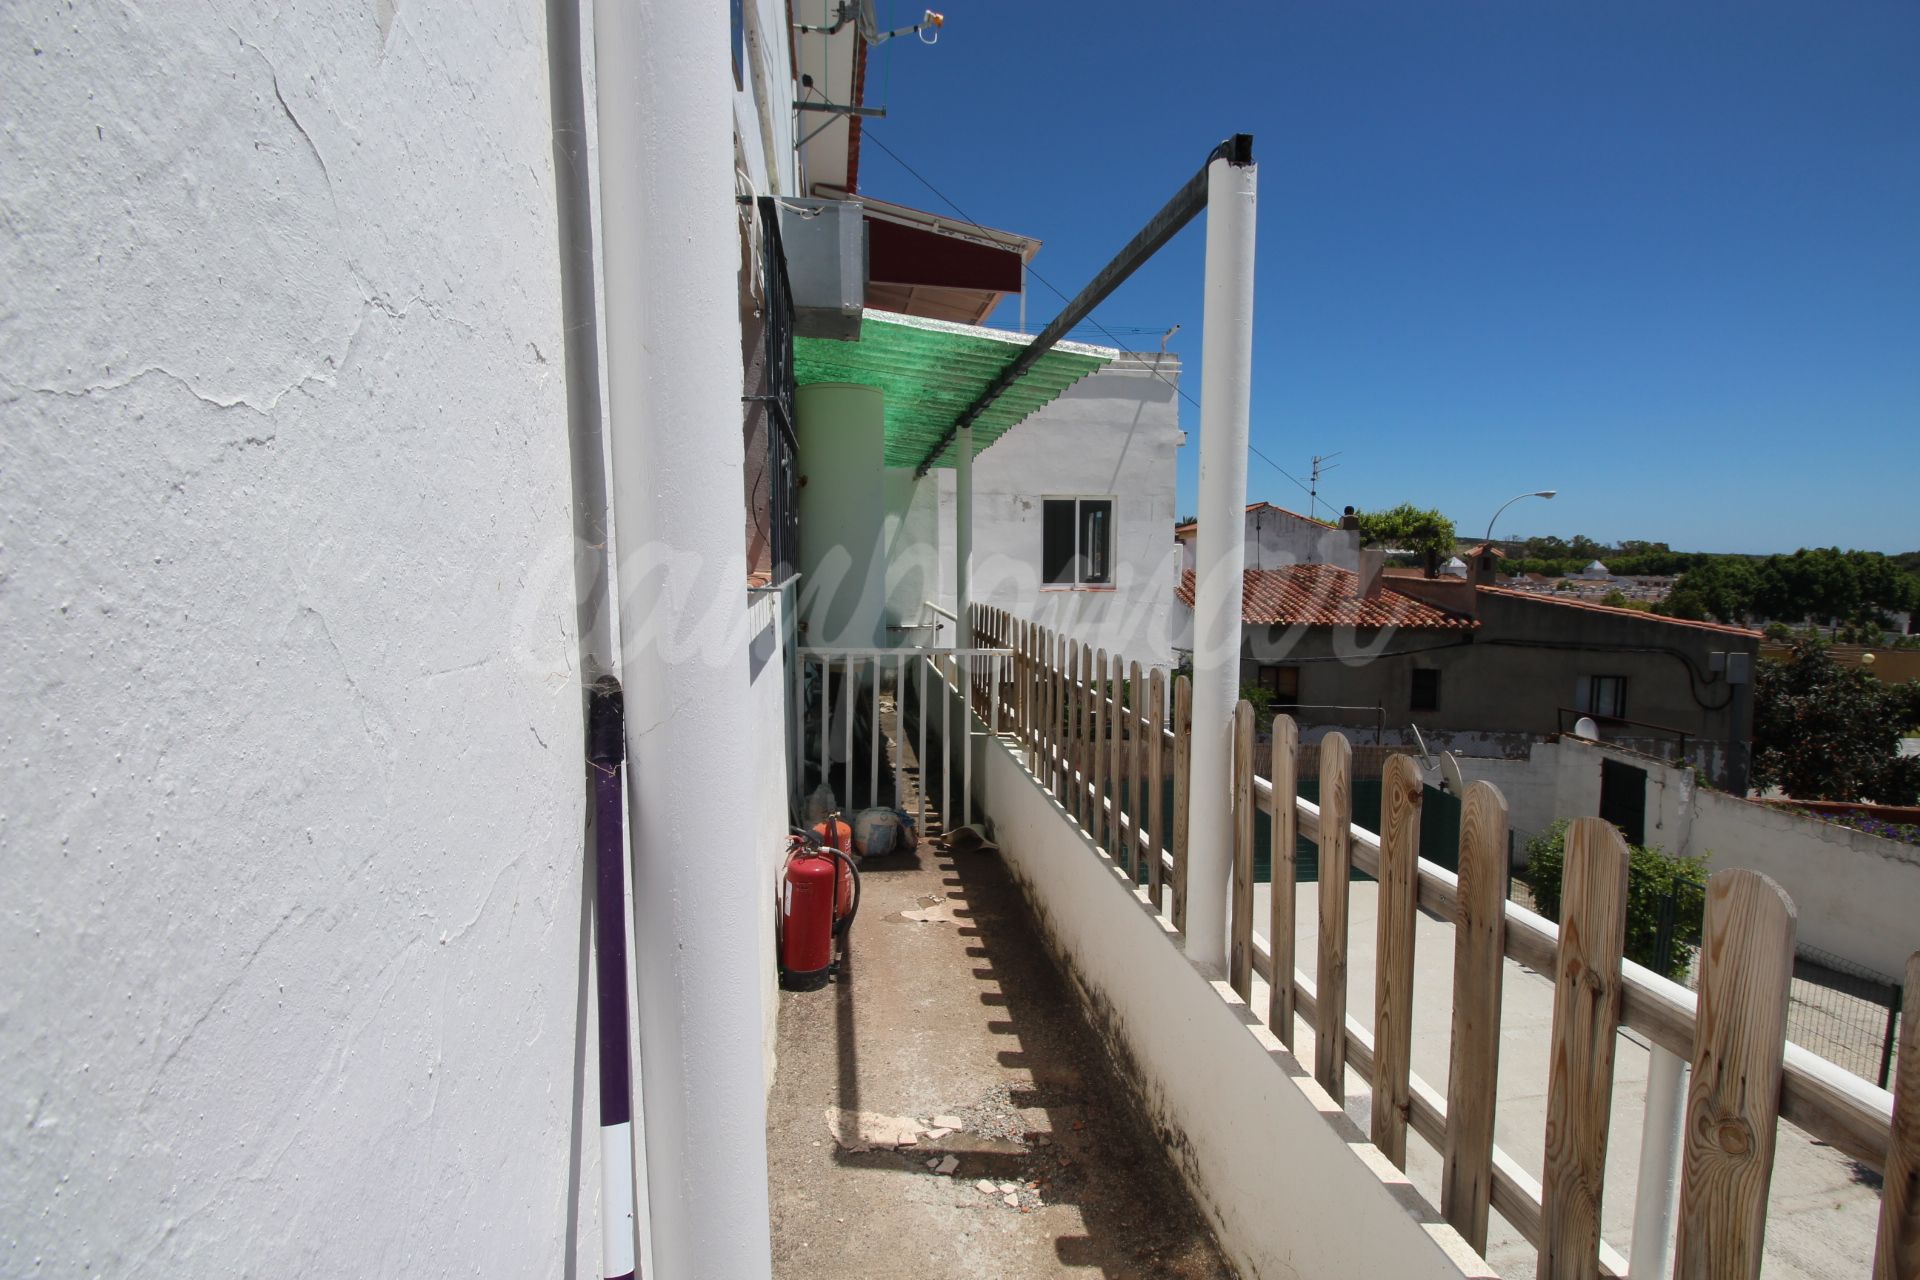 Building in Guadiaro